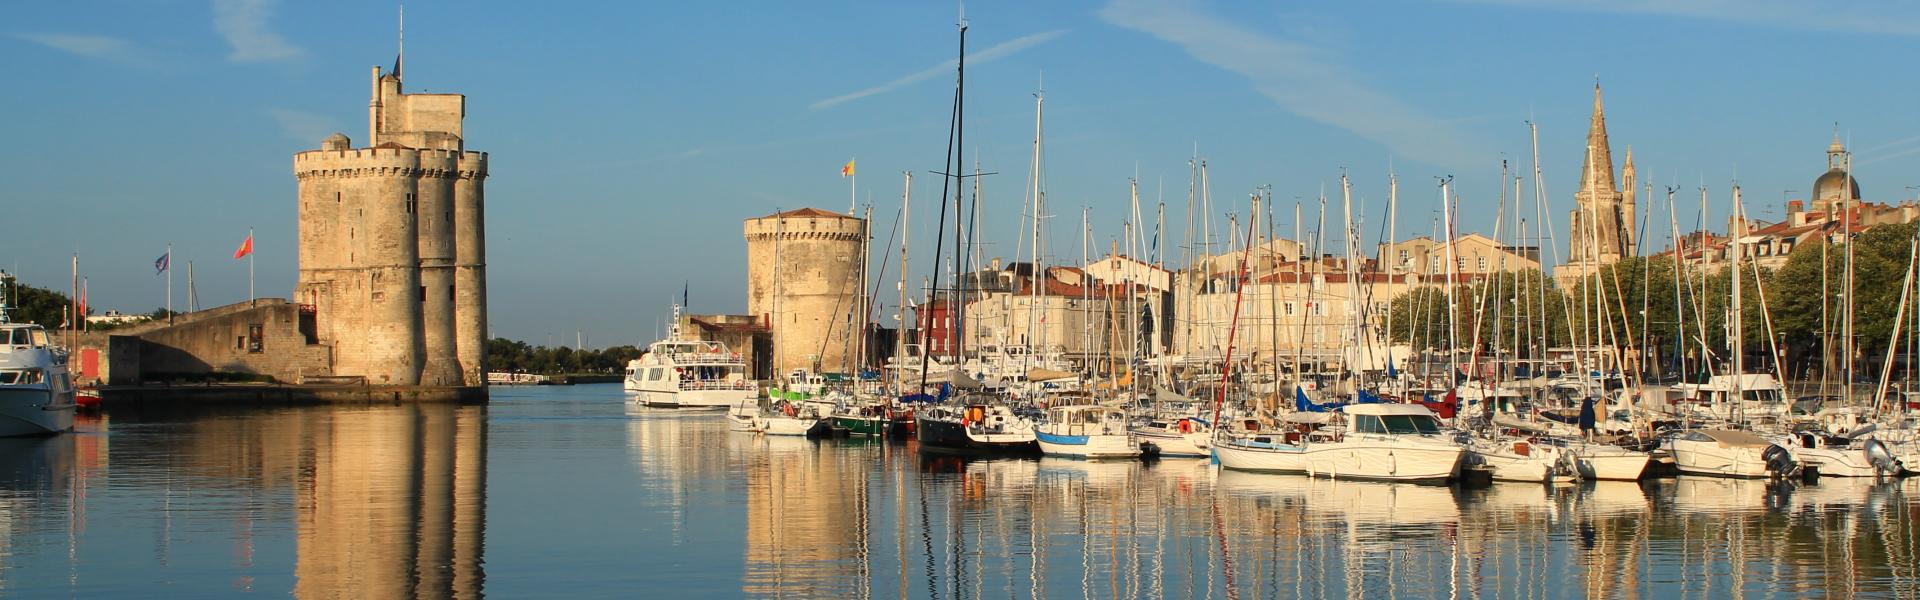 Find the perfect vacation home in La Rochelle - Casamundo